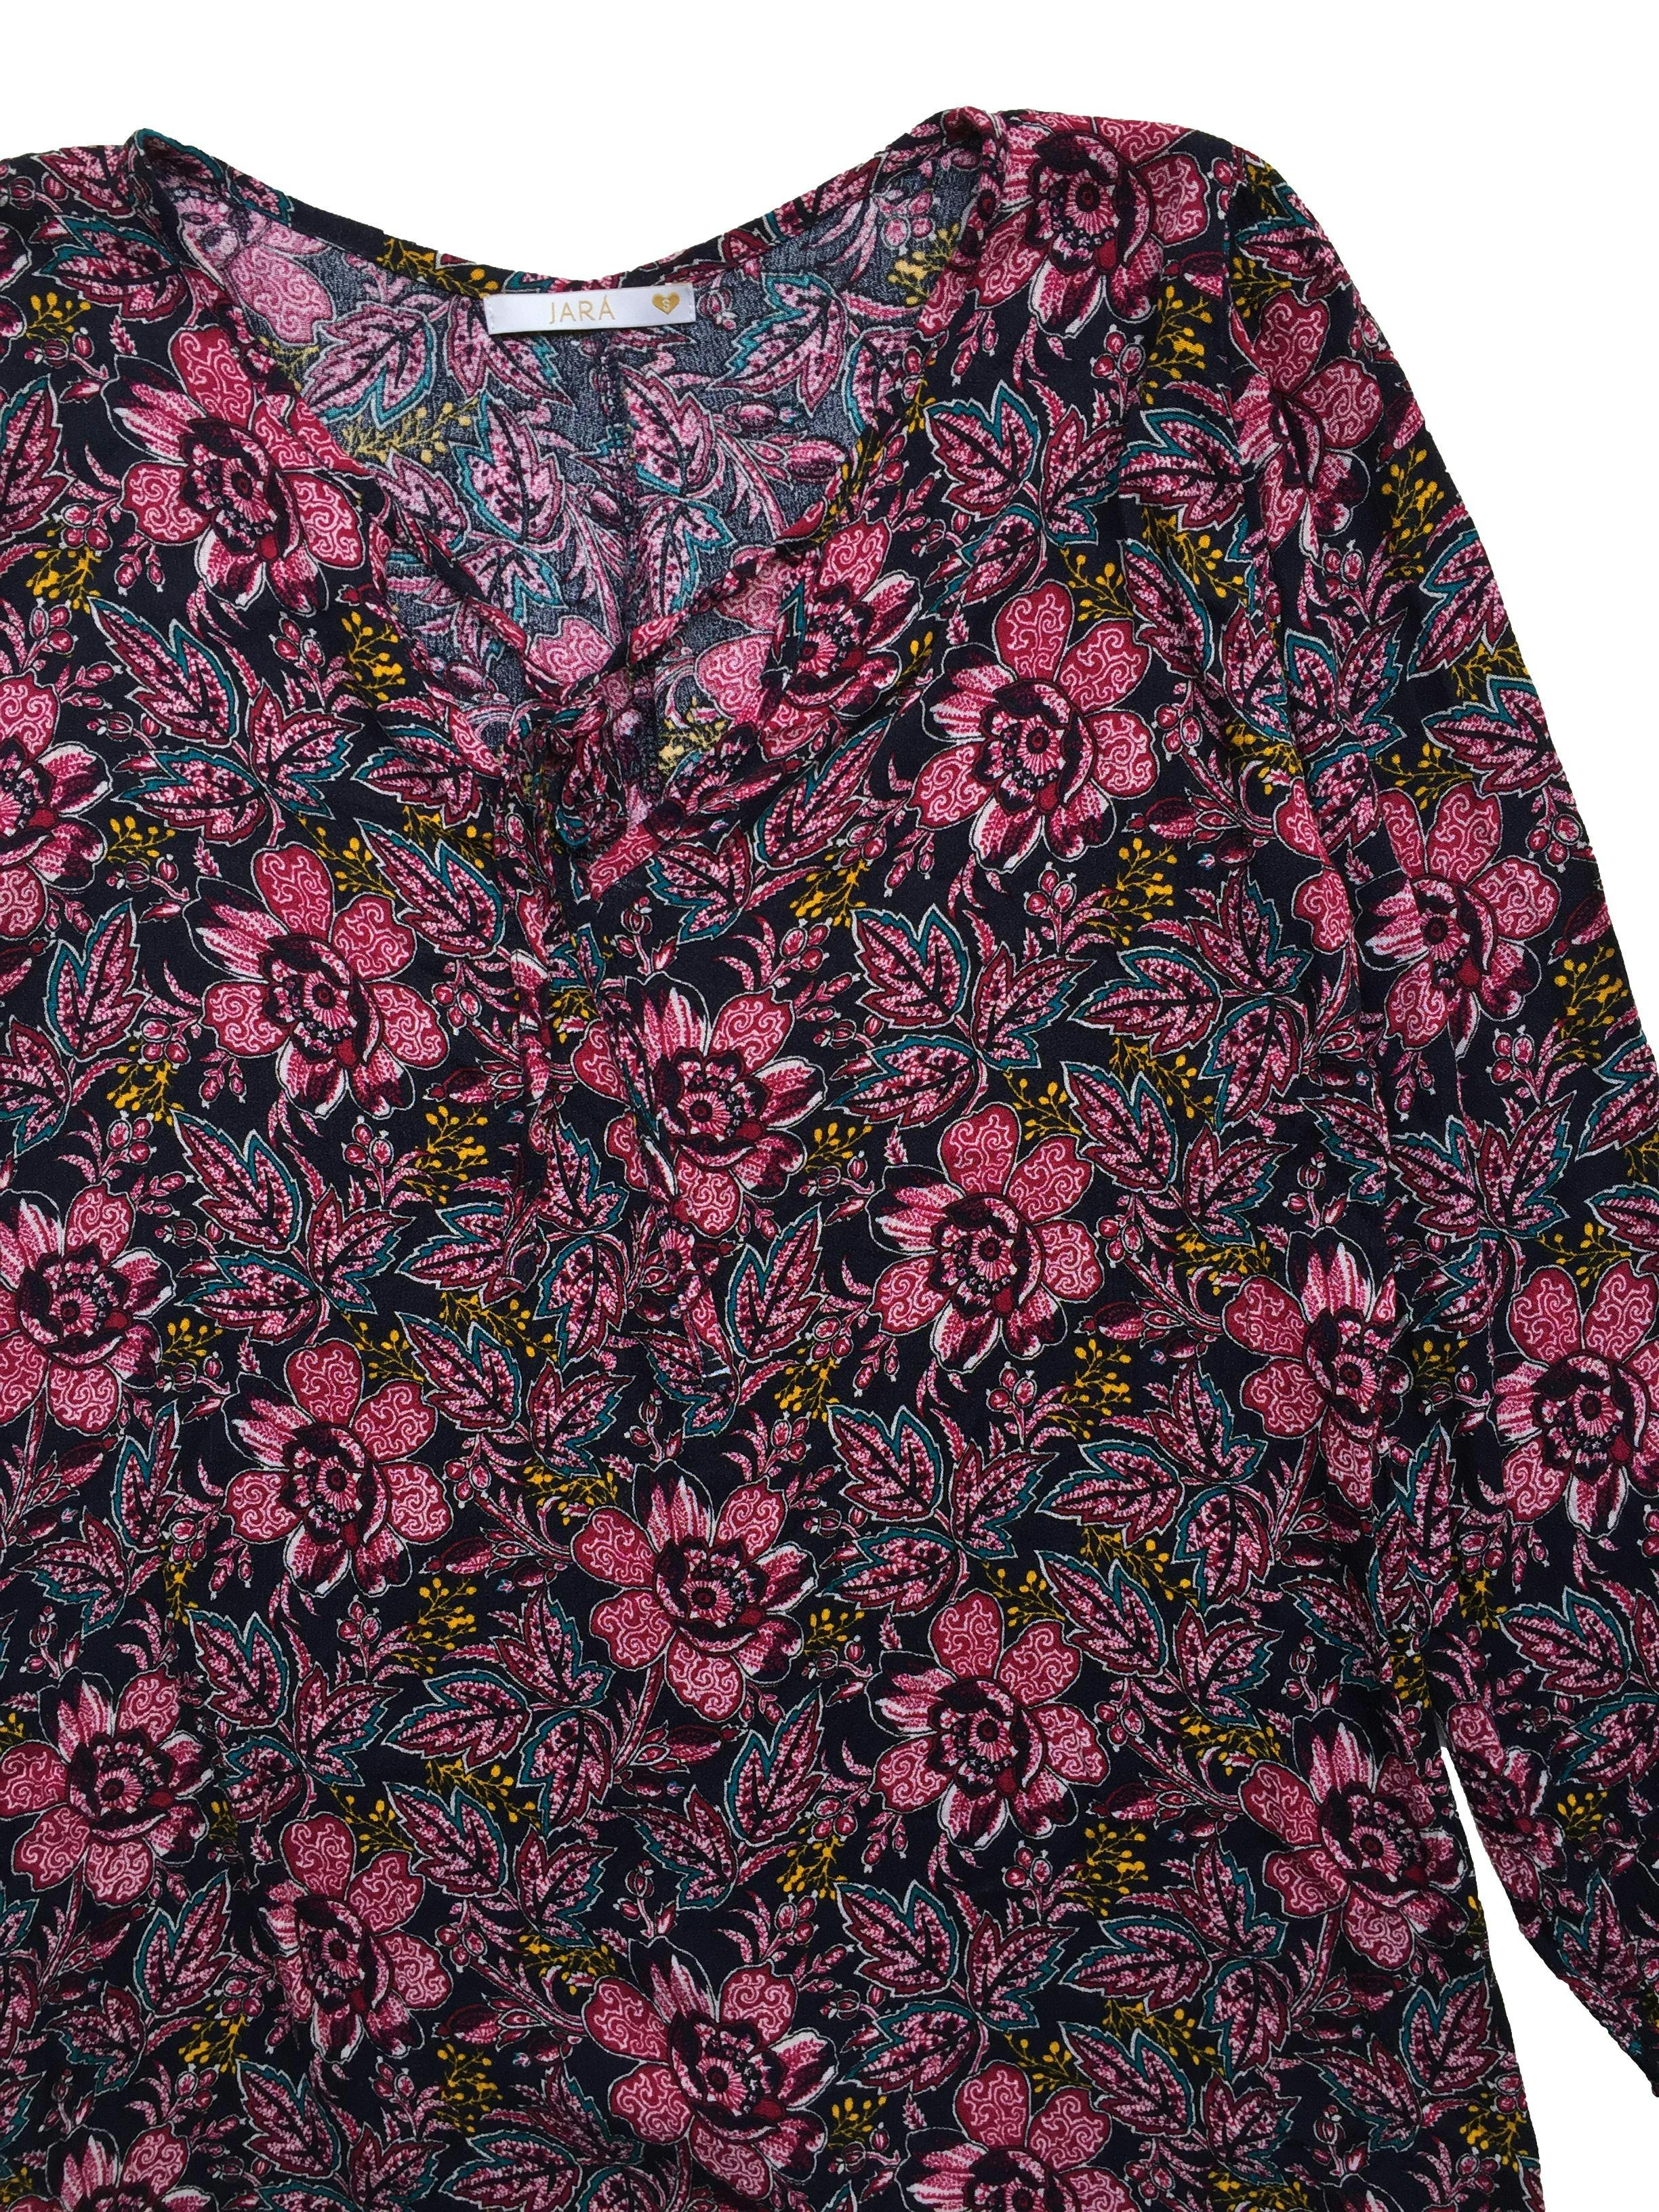 Blusa morada estampado floral, elástico en los puños y pasadores en el cuello. Busto: 108cm, Largo: 82cm